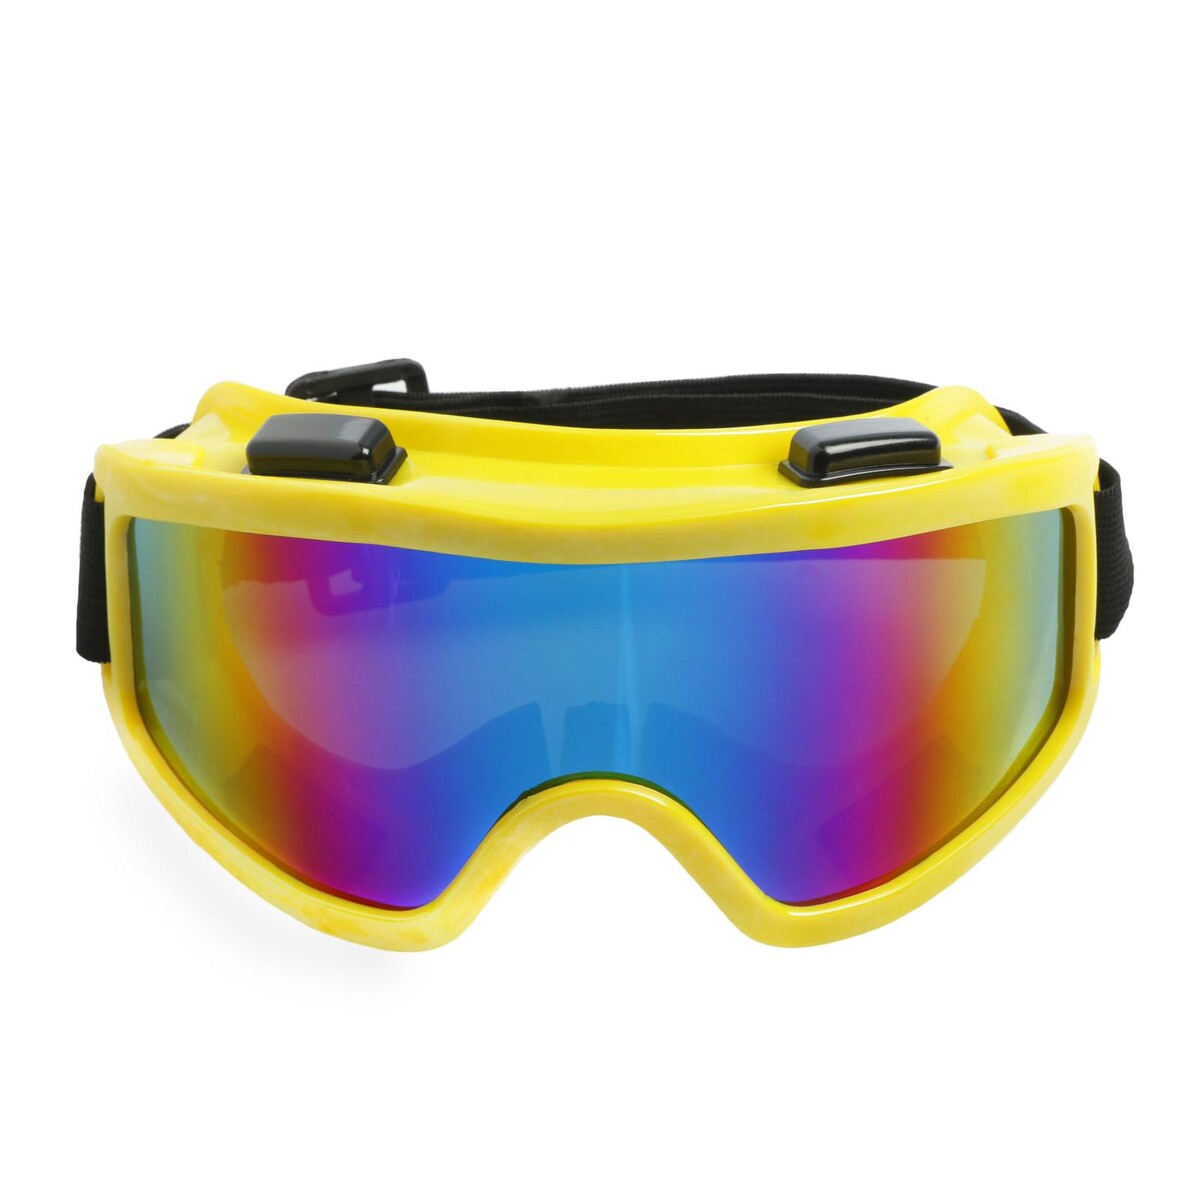 Очки-маска для езды на мототехнике, стекло хамелеон, желтые защитные очки champion c1006 желтые